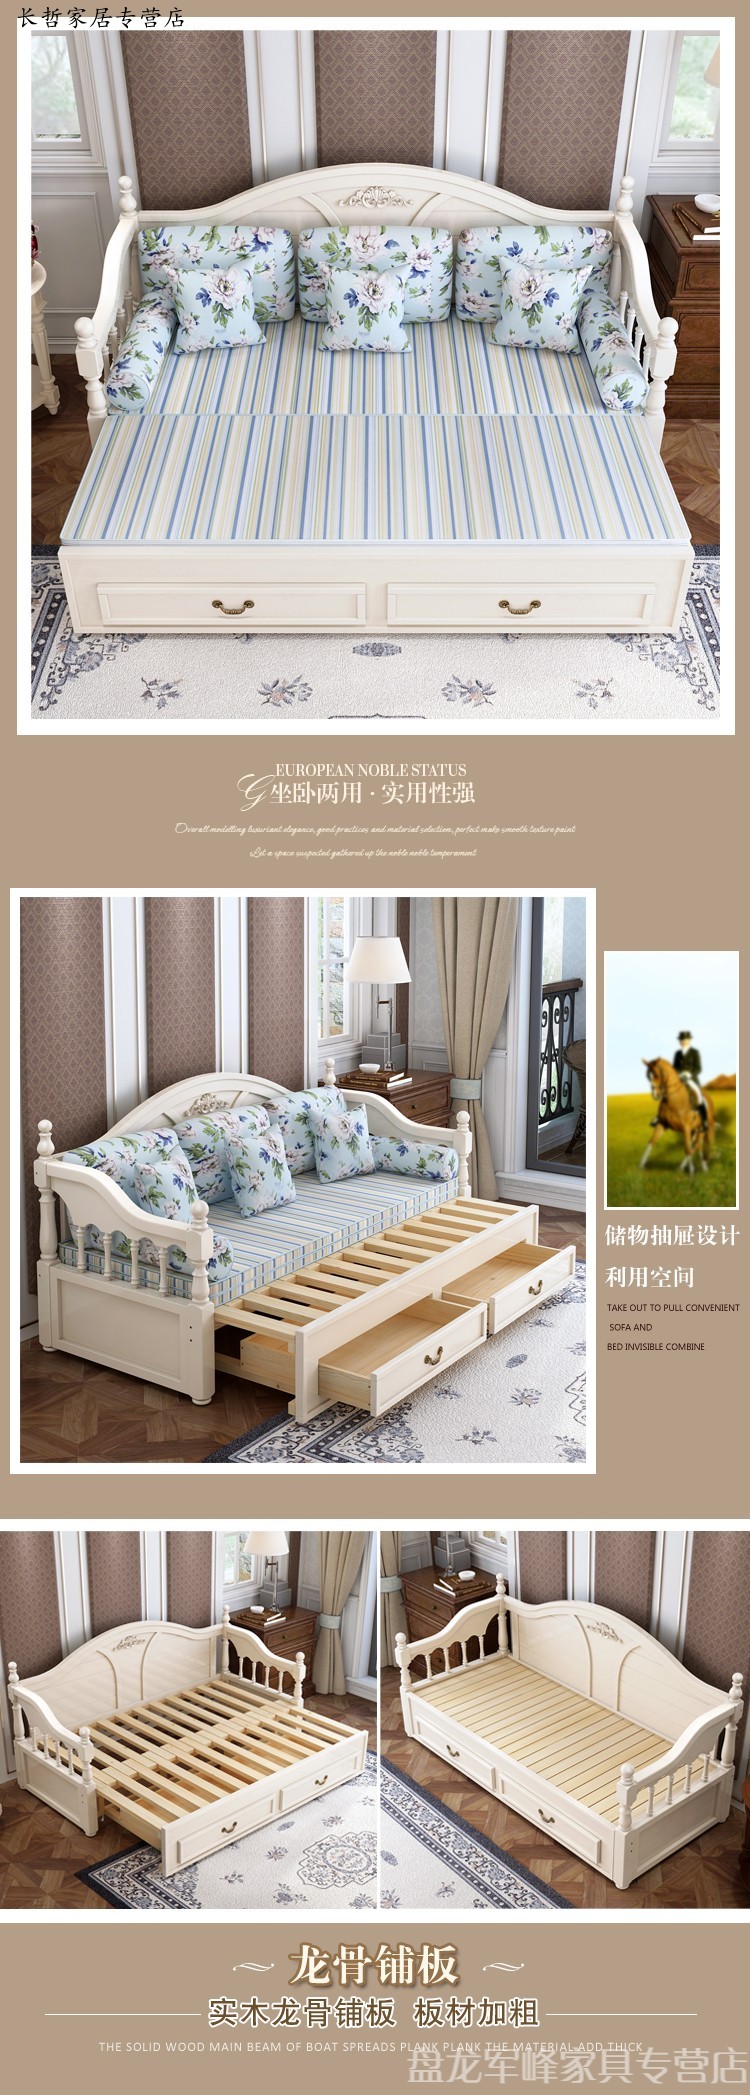 贵族气派高端大气经典欧式实木沙发床两用单双人小户型可推拉多功能1.